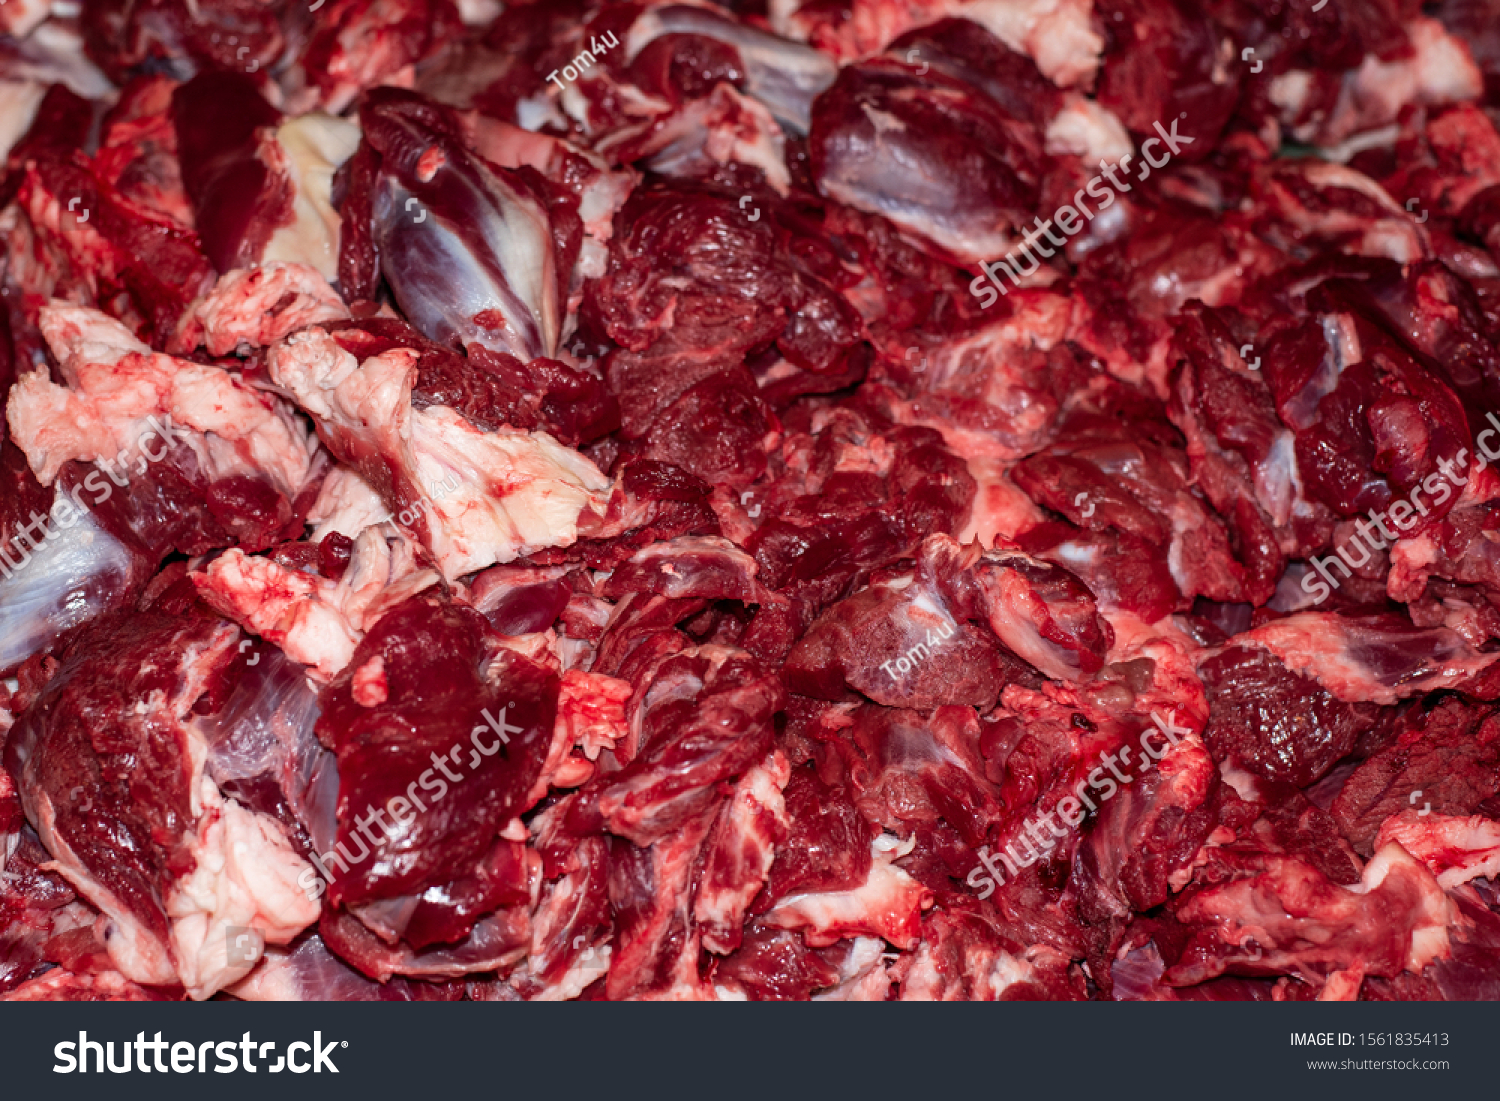 beef texture